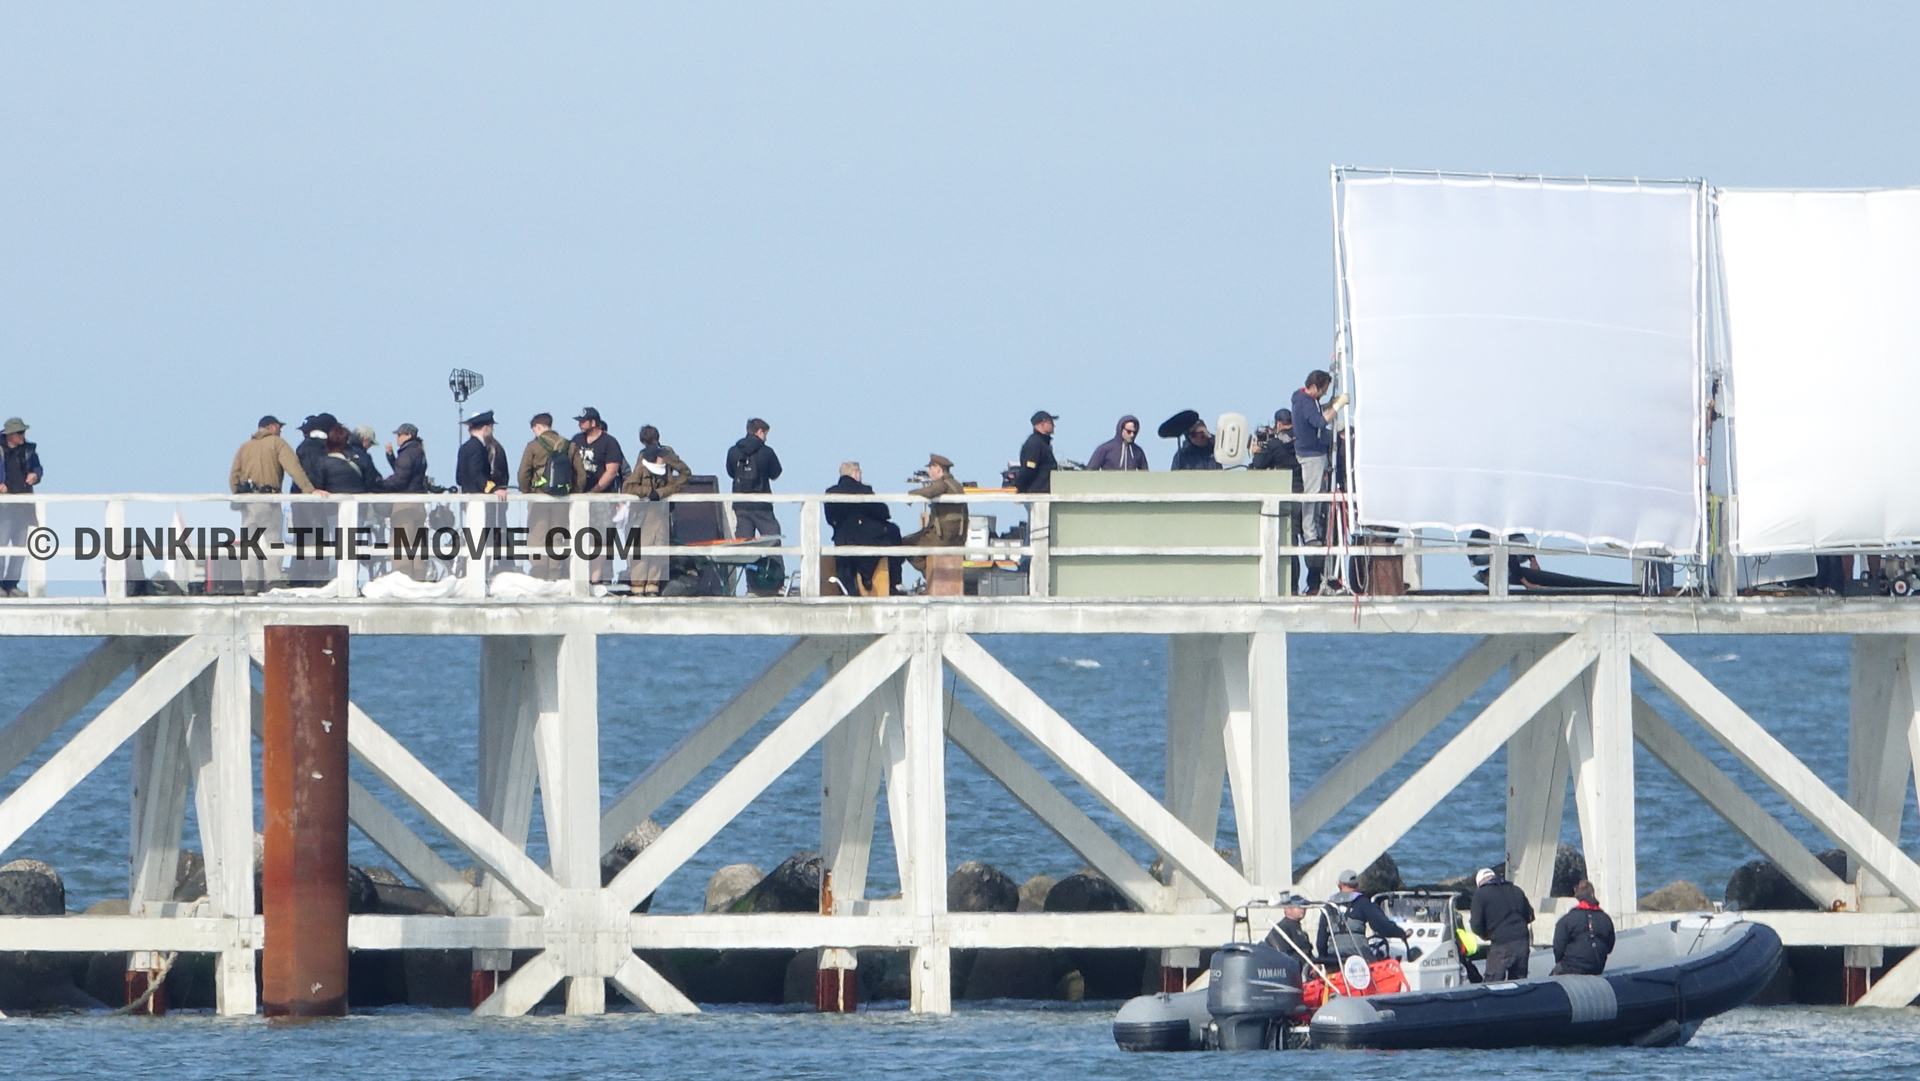 Photo avec ciel bleu, jetée EST, Kenneth Branagh, équipe technique, zodiac,  des dessous du Film Dunkerque de Nolan